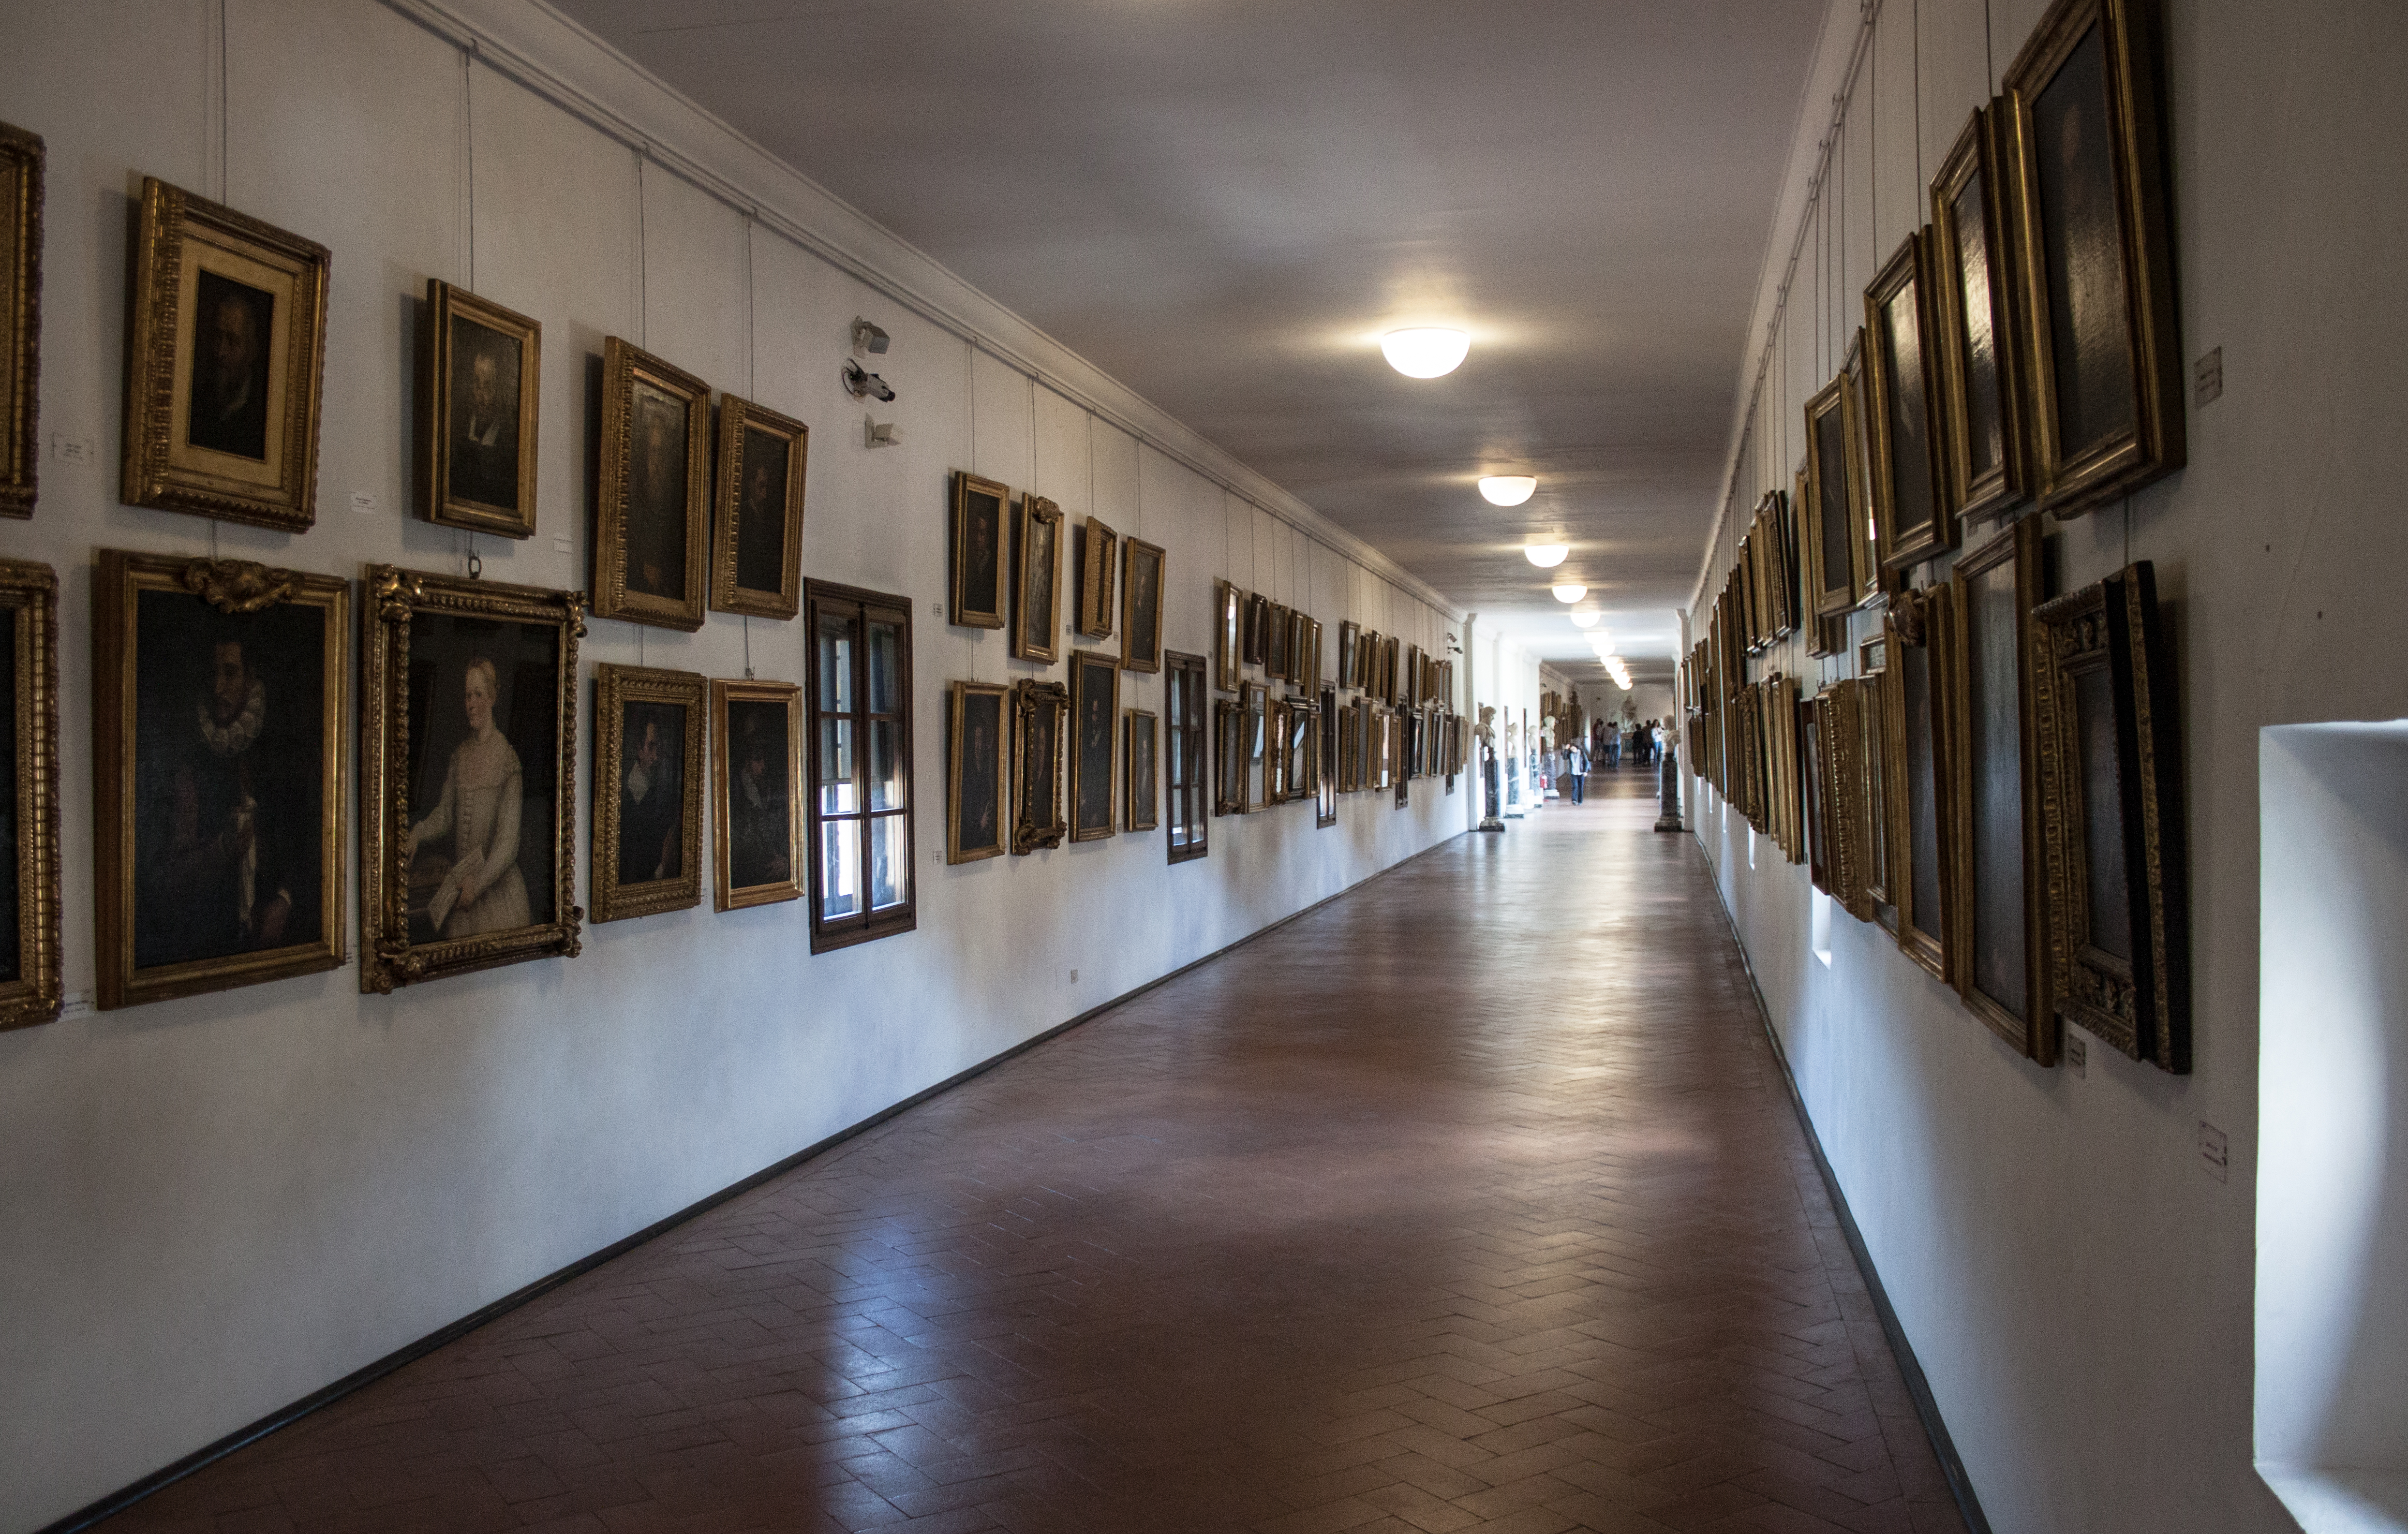 Коллекция автопортретов внутри коридора Вазари. Источник https://upload.wikimedia.org/